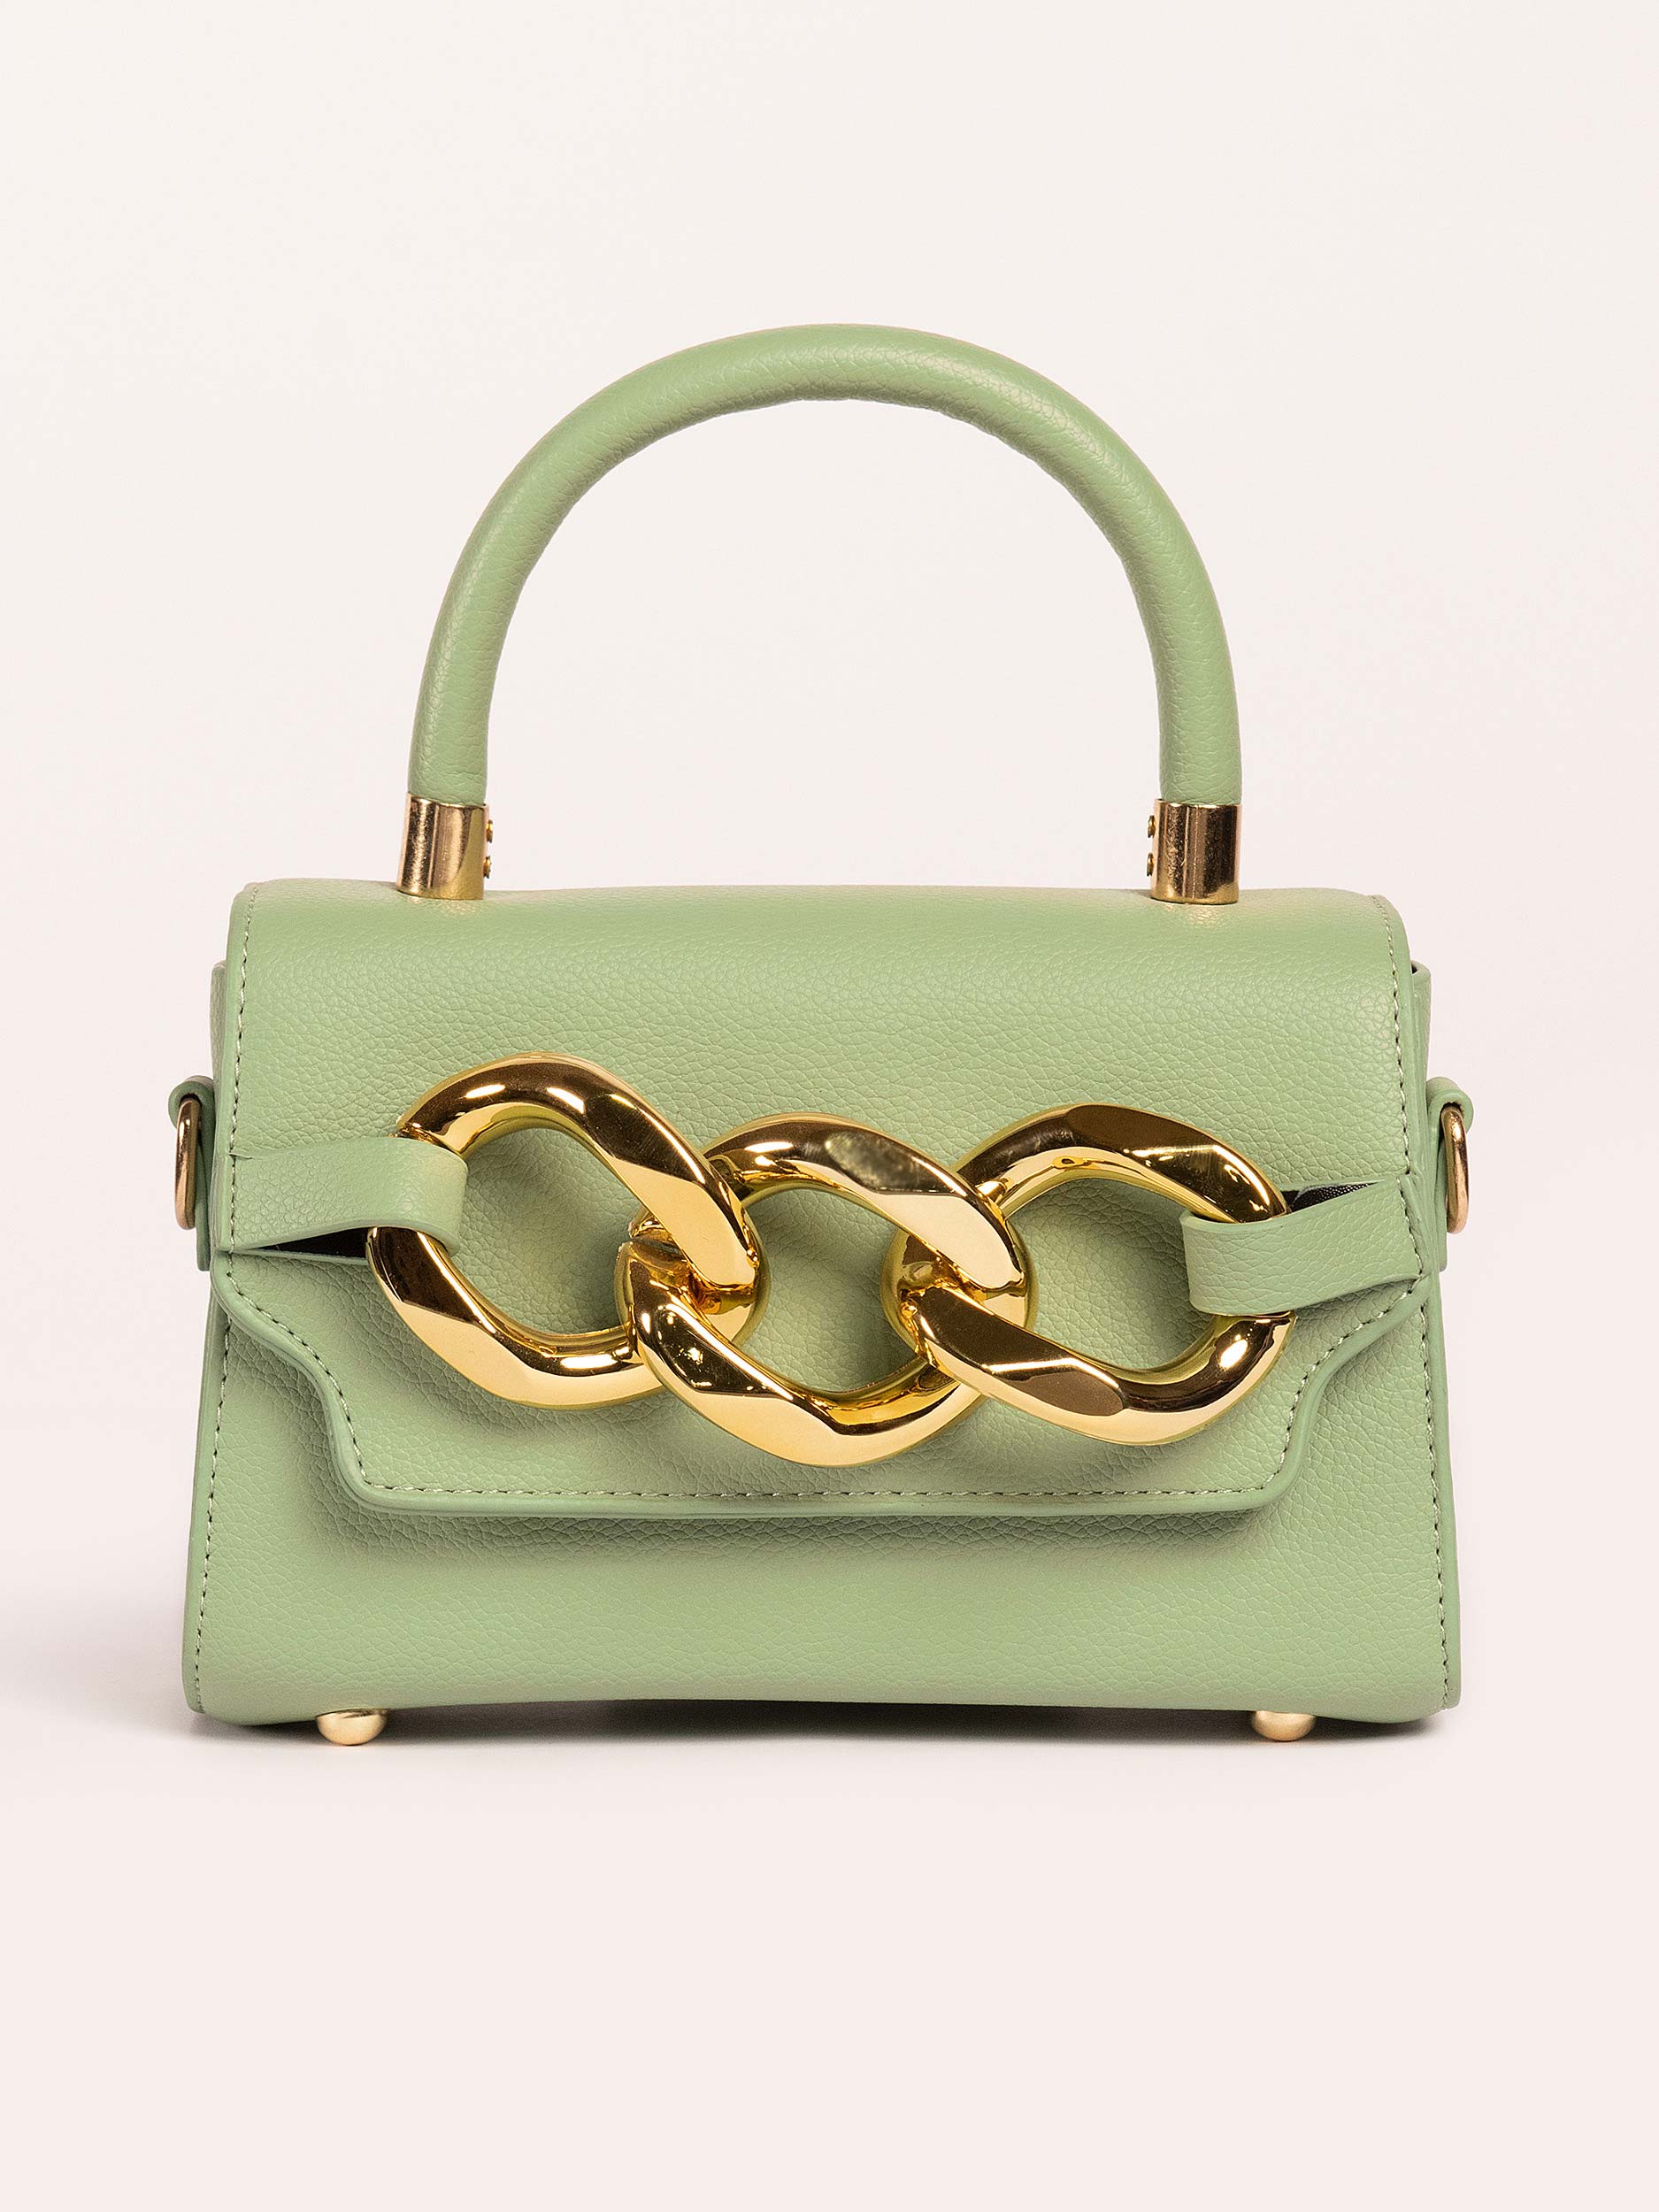 braided-chain-mini-handbag